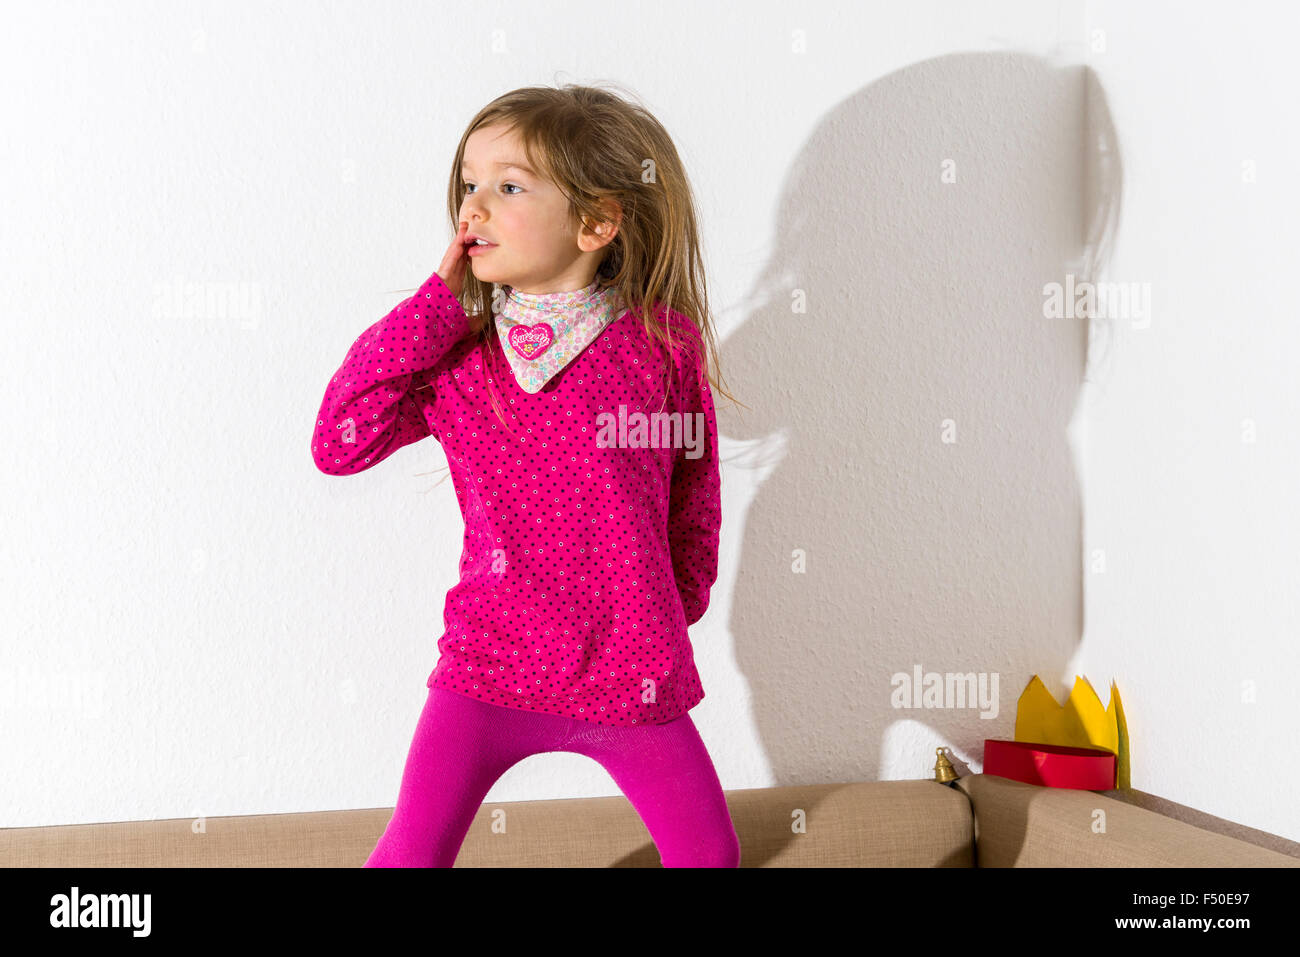 Une blonde fillette de trois ans, porter un chandail rose, danse avec cheveux ouvert devant un mur blanc, laissant son ombre derrière Banque D'Images